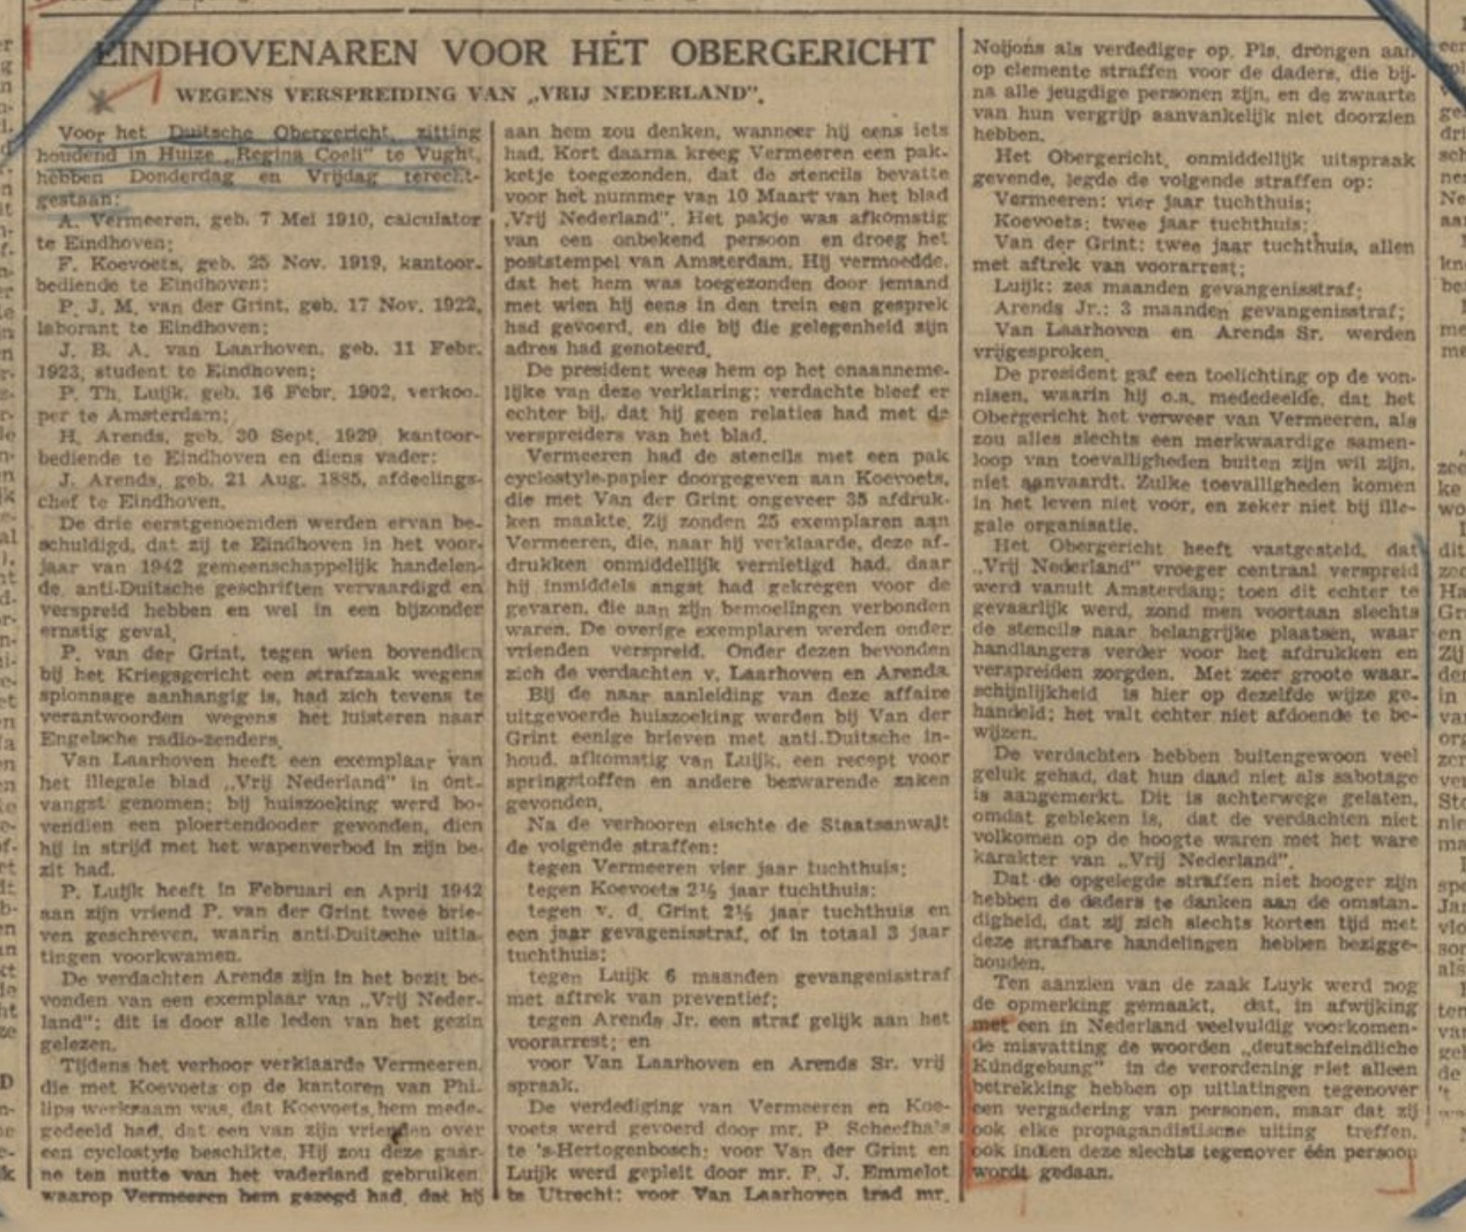 https://www.eindhovenfotos.nl/3/assets/images/dagblad-vh-zuiden31-10-1942-1466x1232.jpg